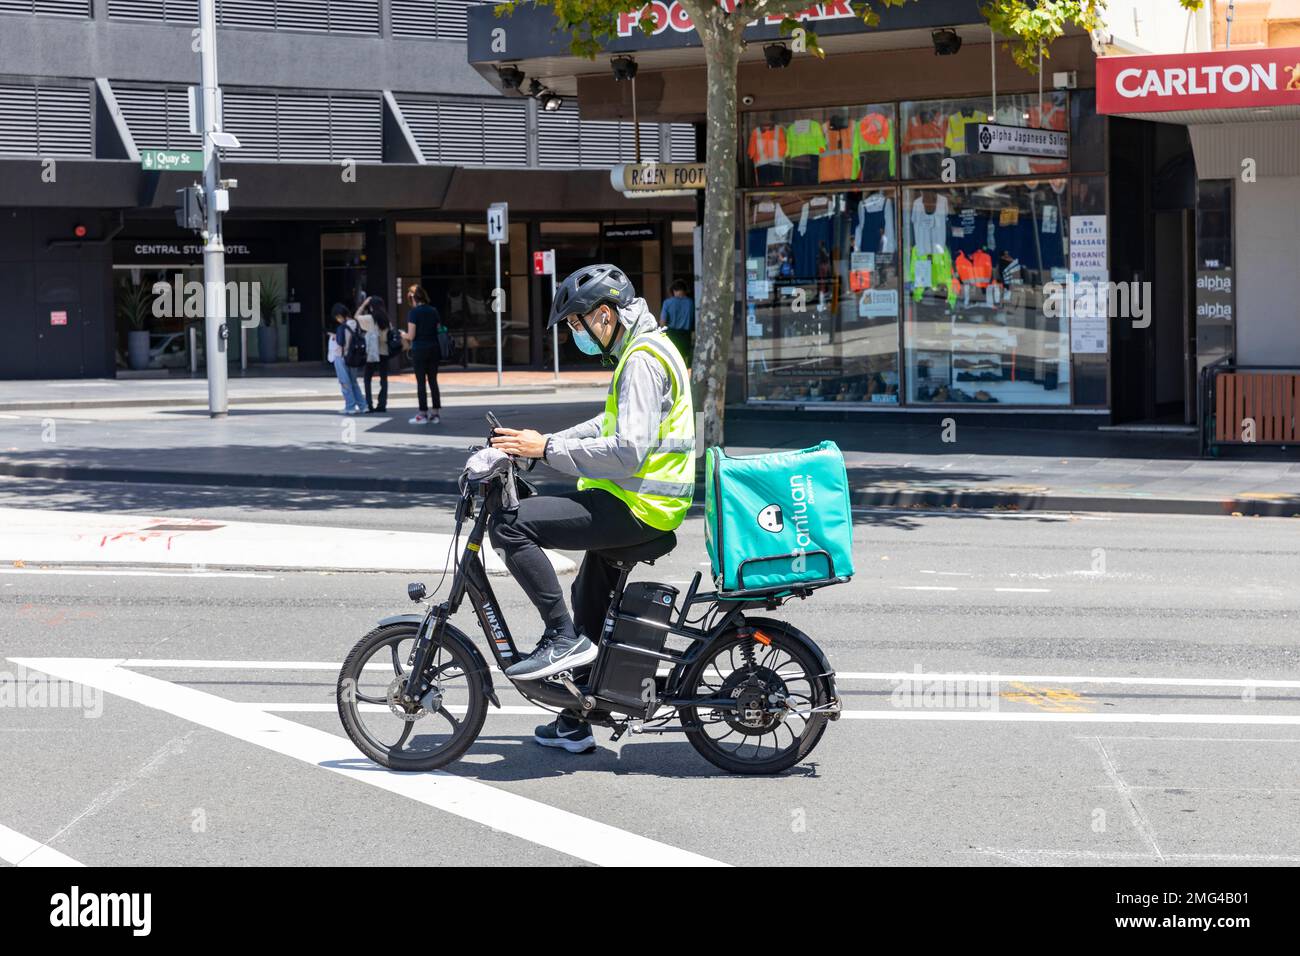 Essenslieferung Radfahrer fährt mit dem E-Bike und trägt einen Fahrradhelm Sydney, NSW, Australien Stockfoto